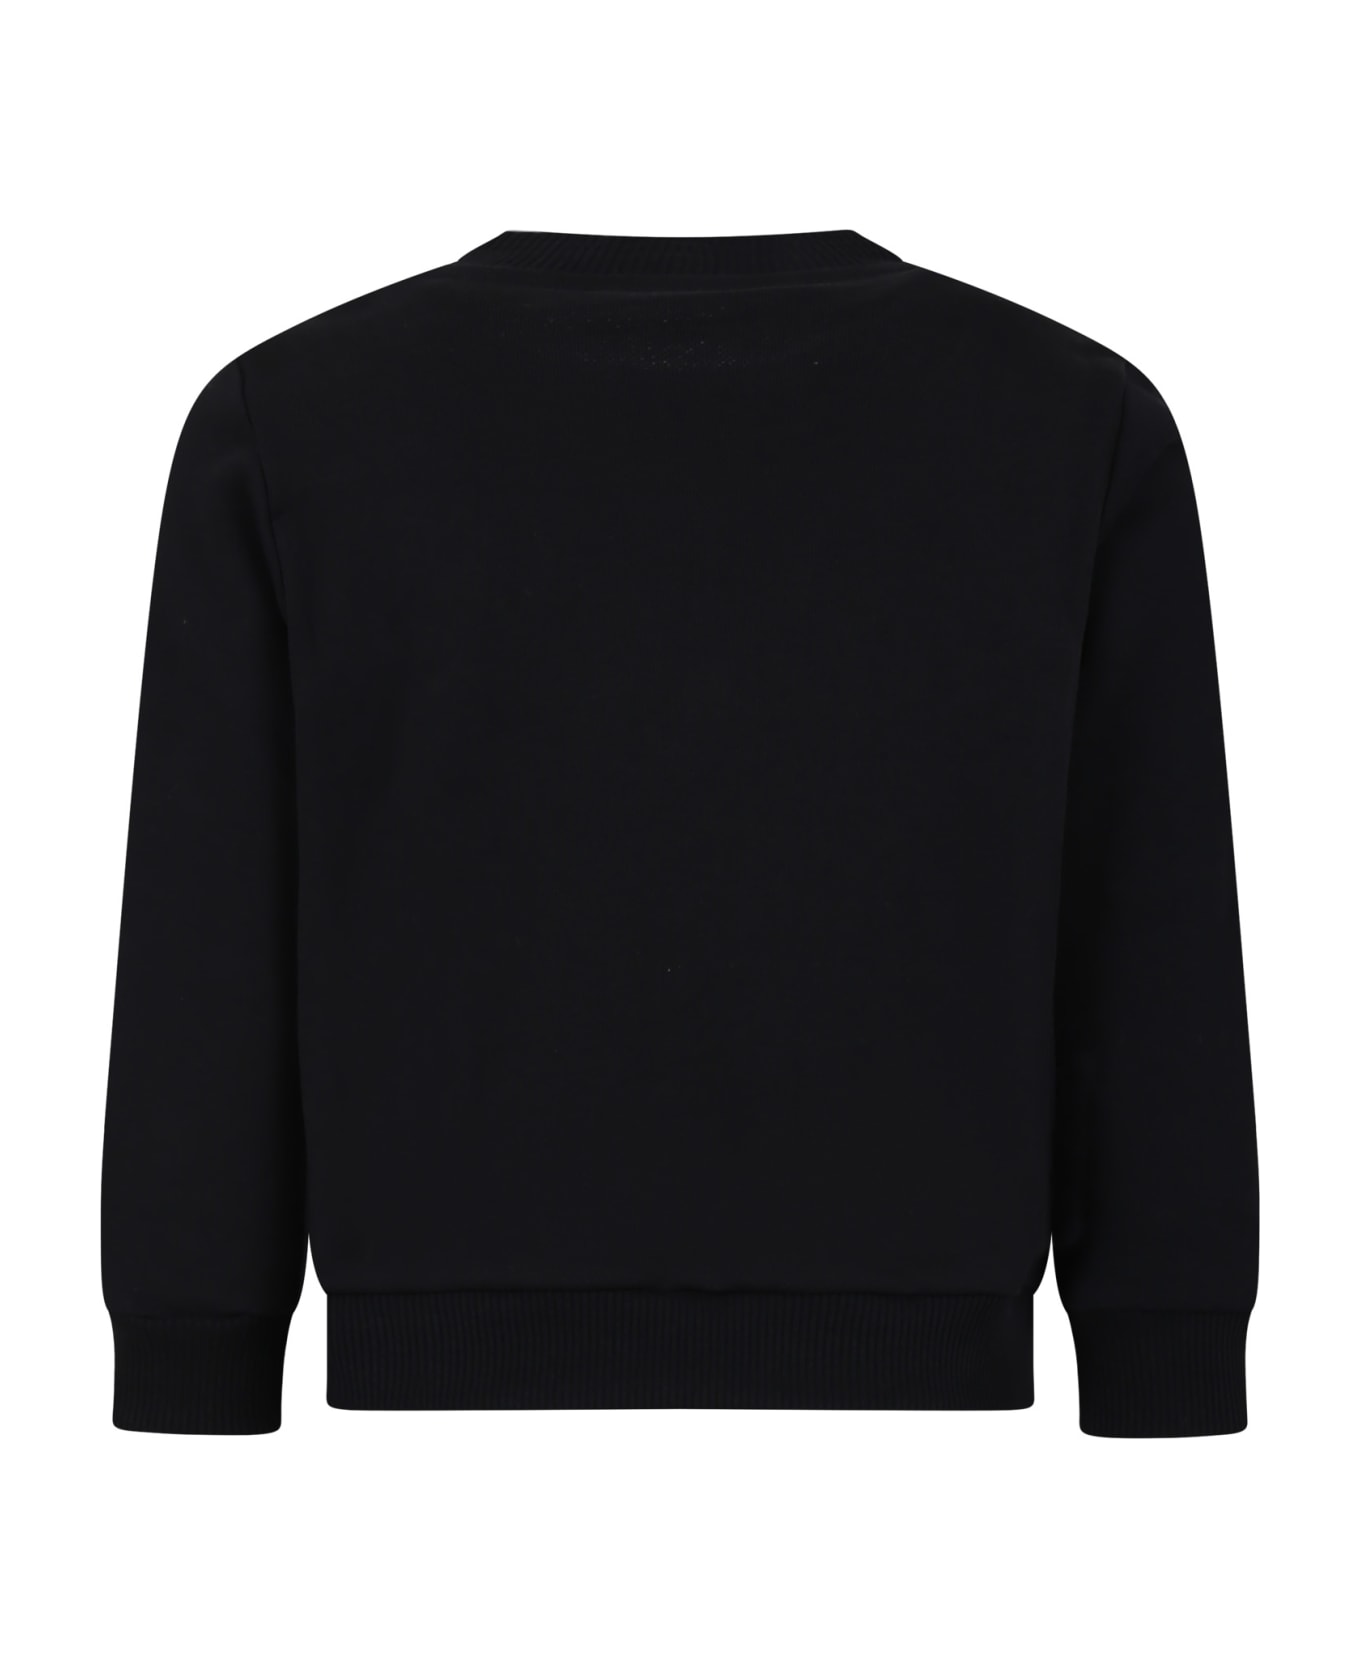 Balmain Black Sweatshirt For Girl With Logo - Black/white ニットウェア＆スウェットシャツ